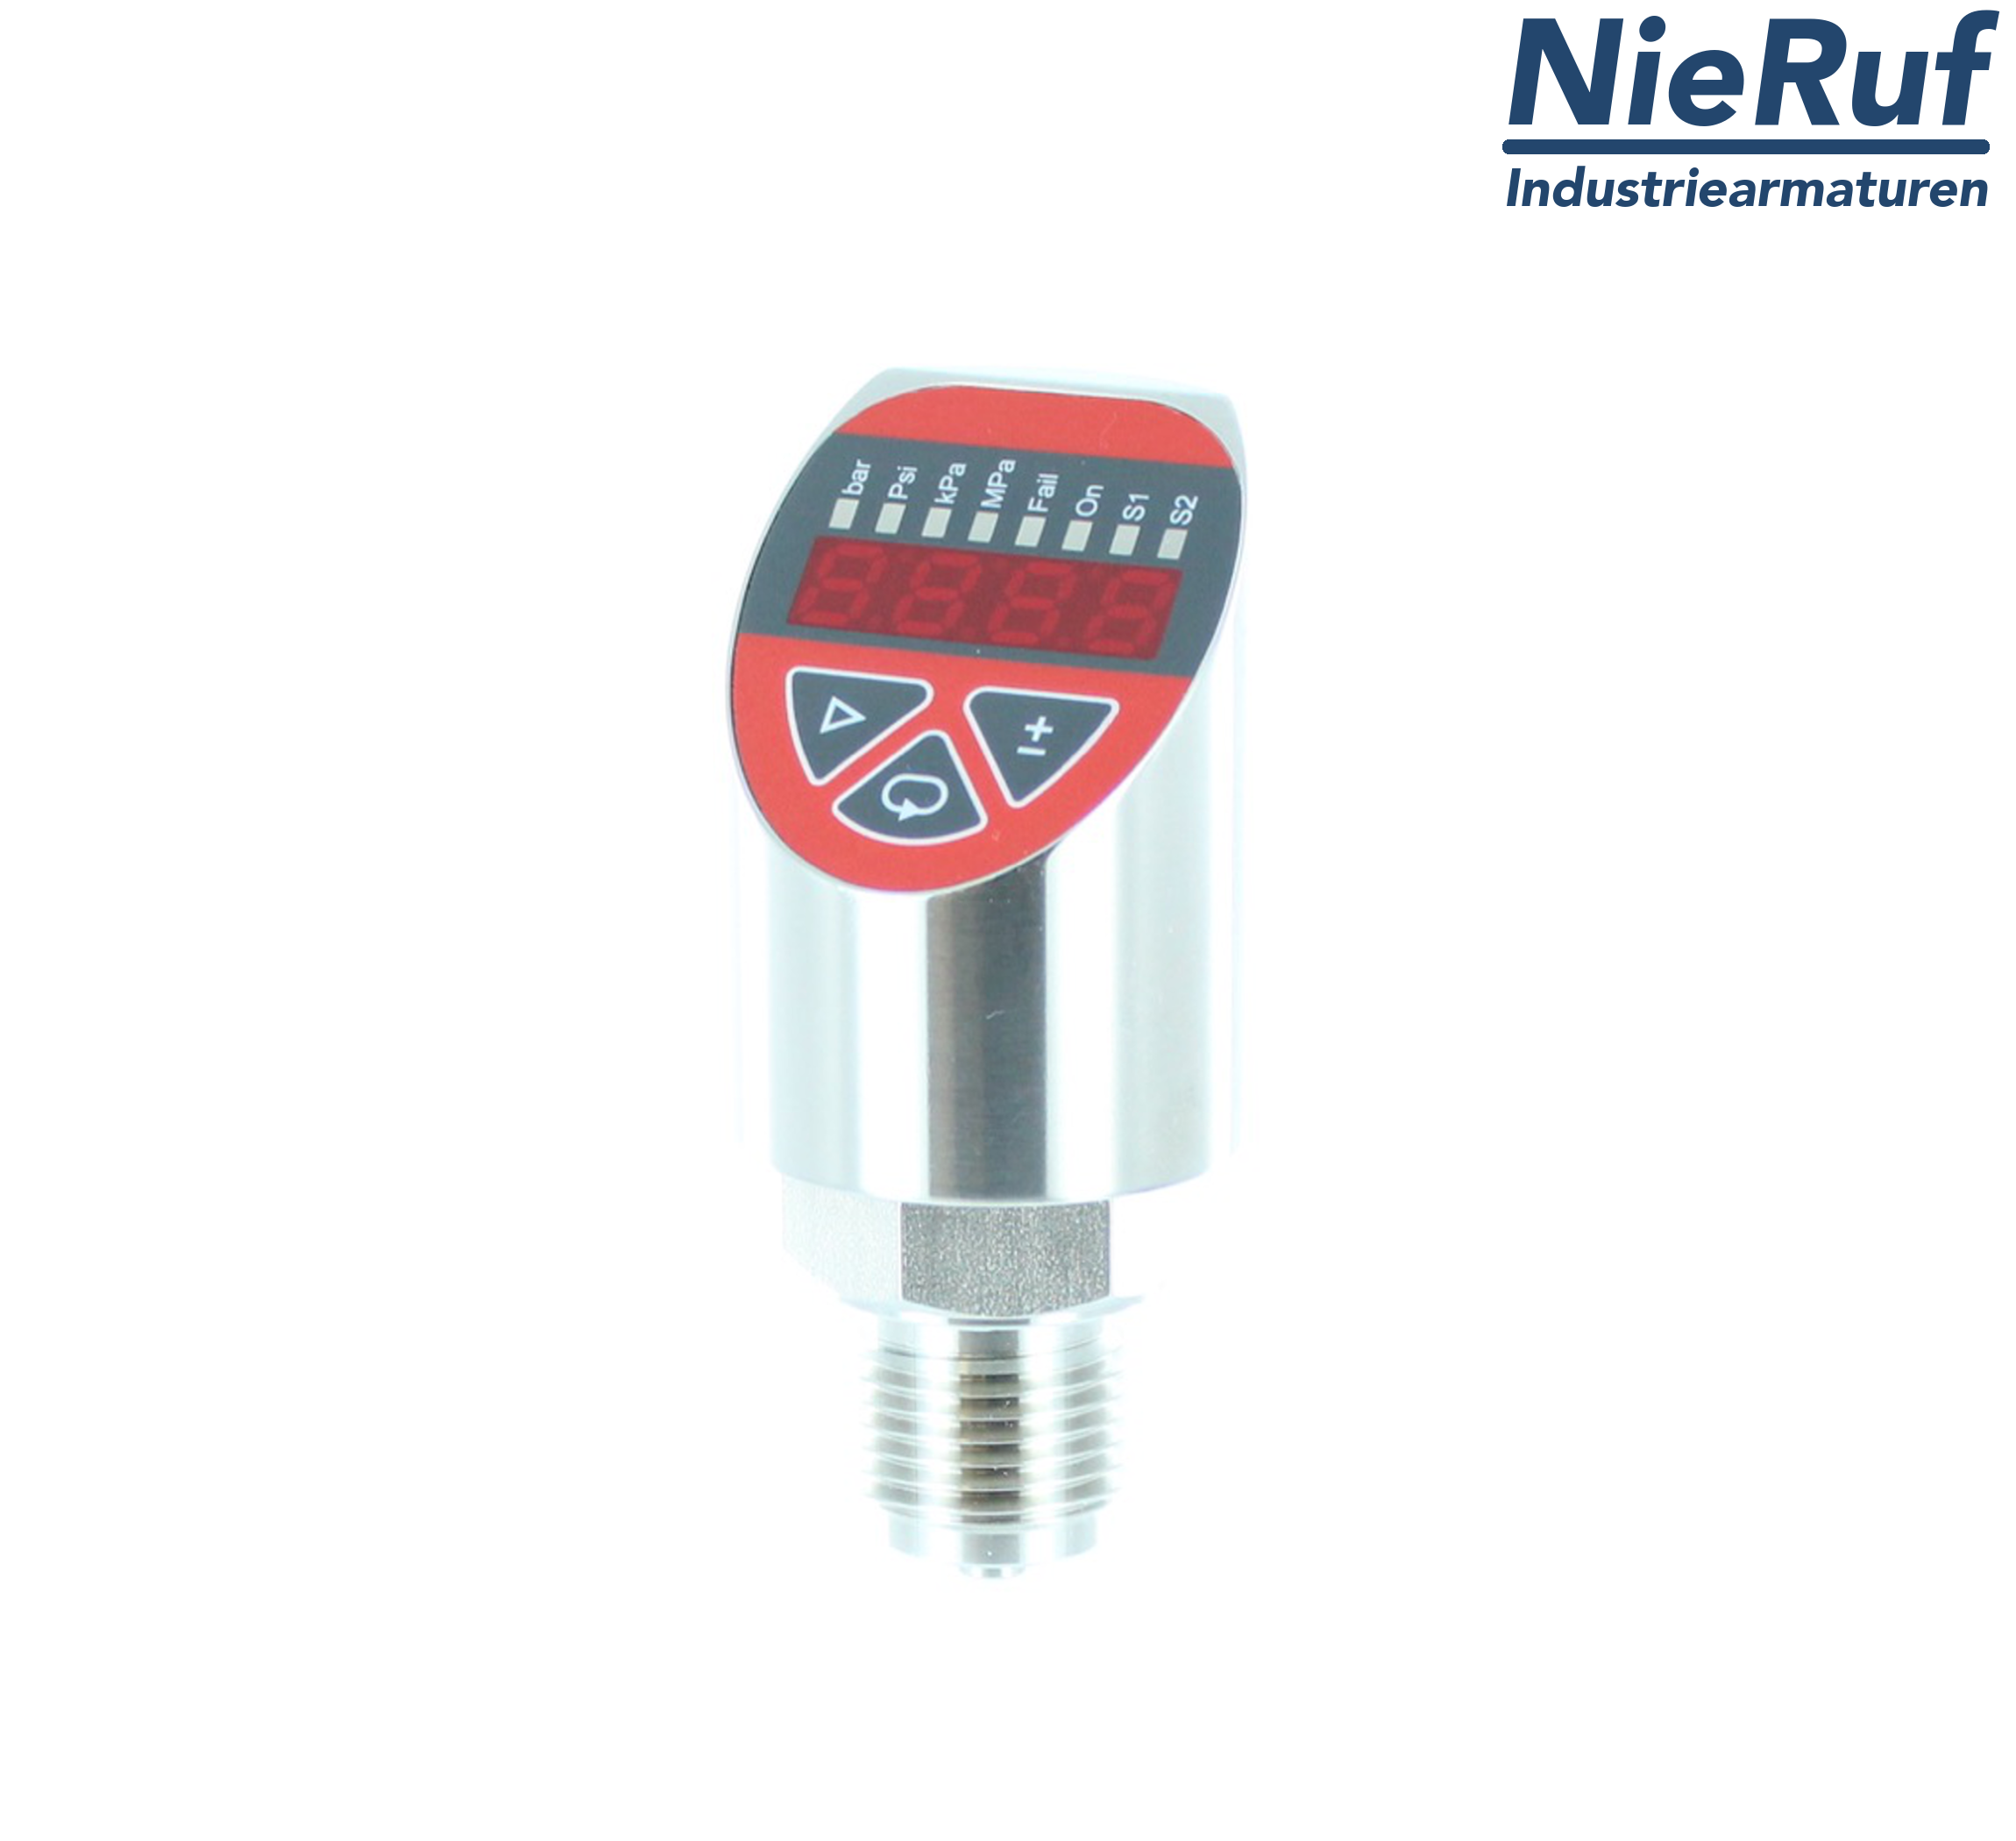 digital pressure sensor G 1/2" B IB 5-wire: 2xPNP, 1x4 - 20mA FPM 0,0 - 10,0 bar